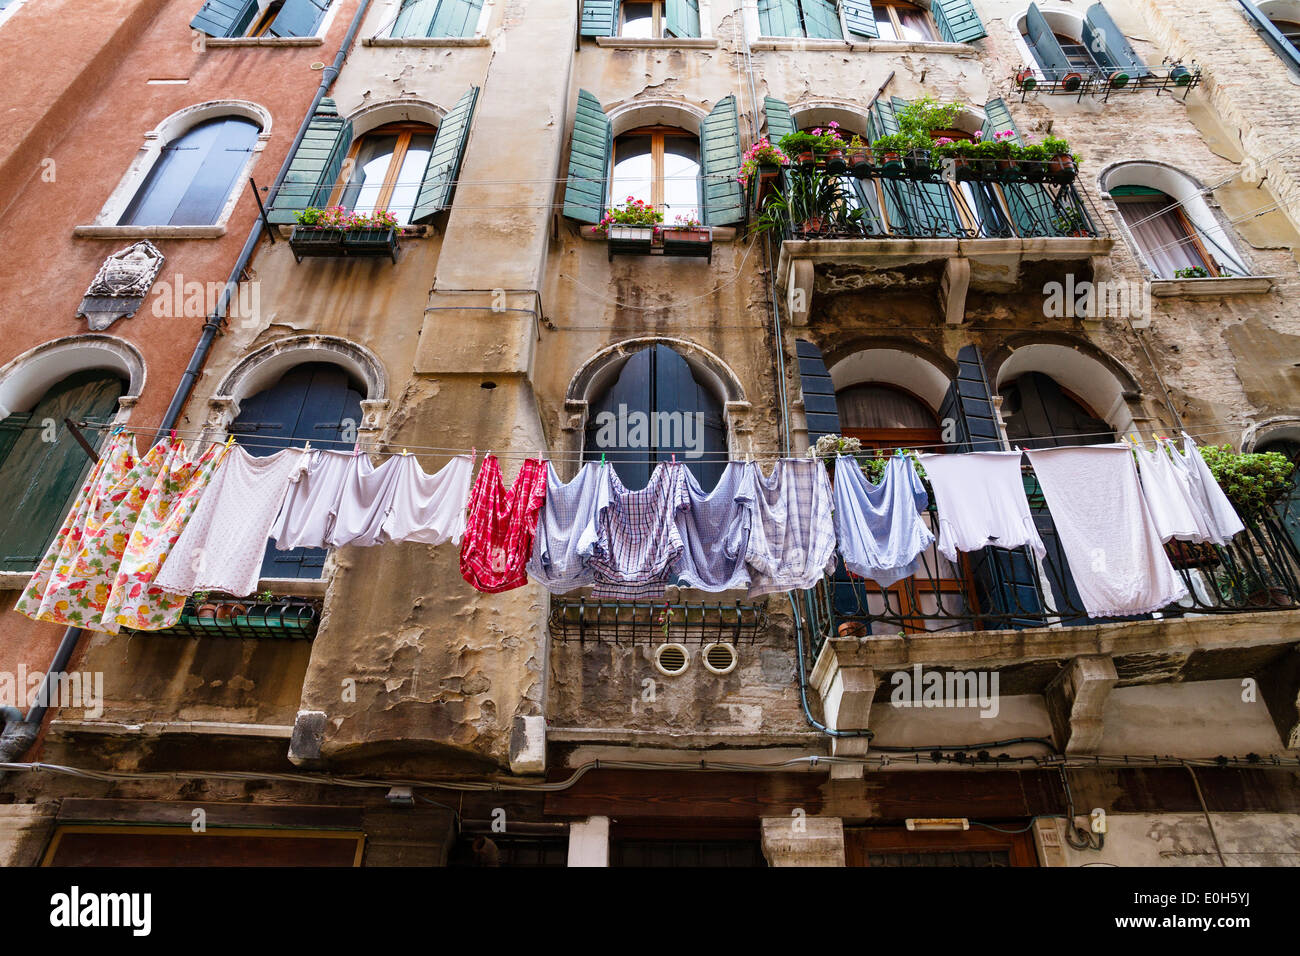 House facade with laundry, Venice, Venetia, Italy, Europe Stock Photo